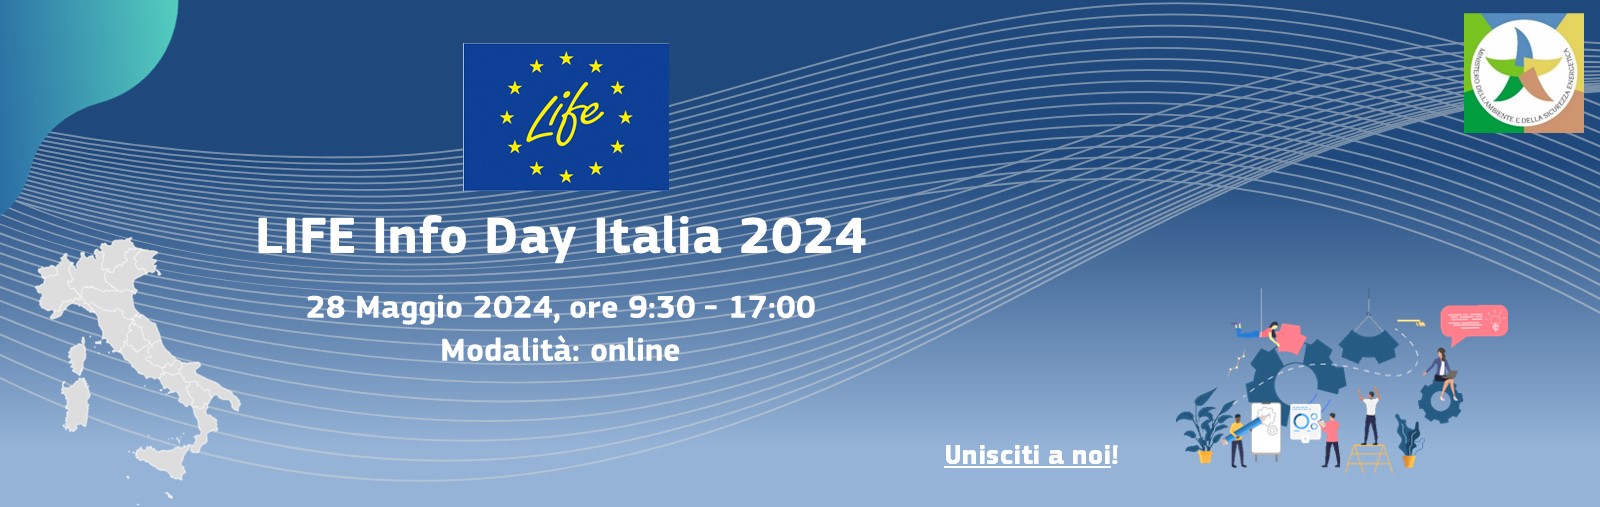 LIFE Info Day Italia 2024 (evento online, 28 maggio 2024)